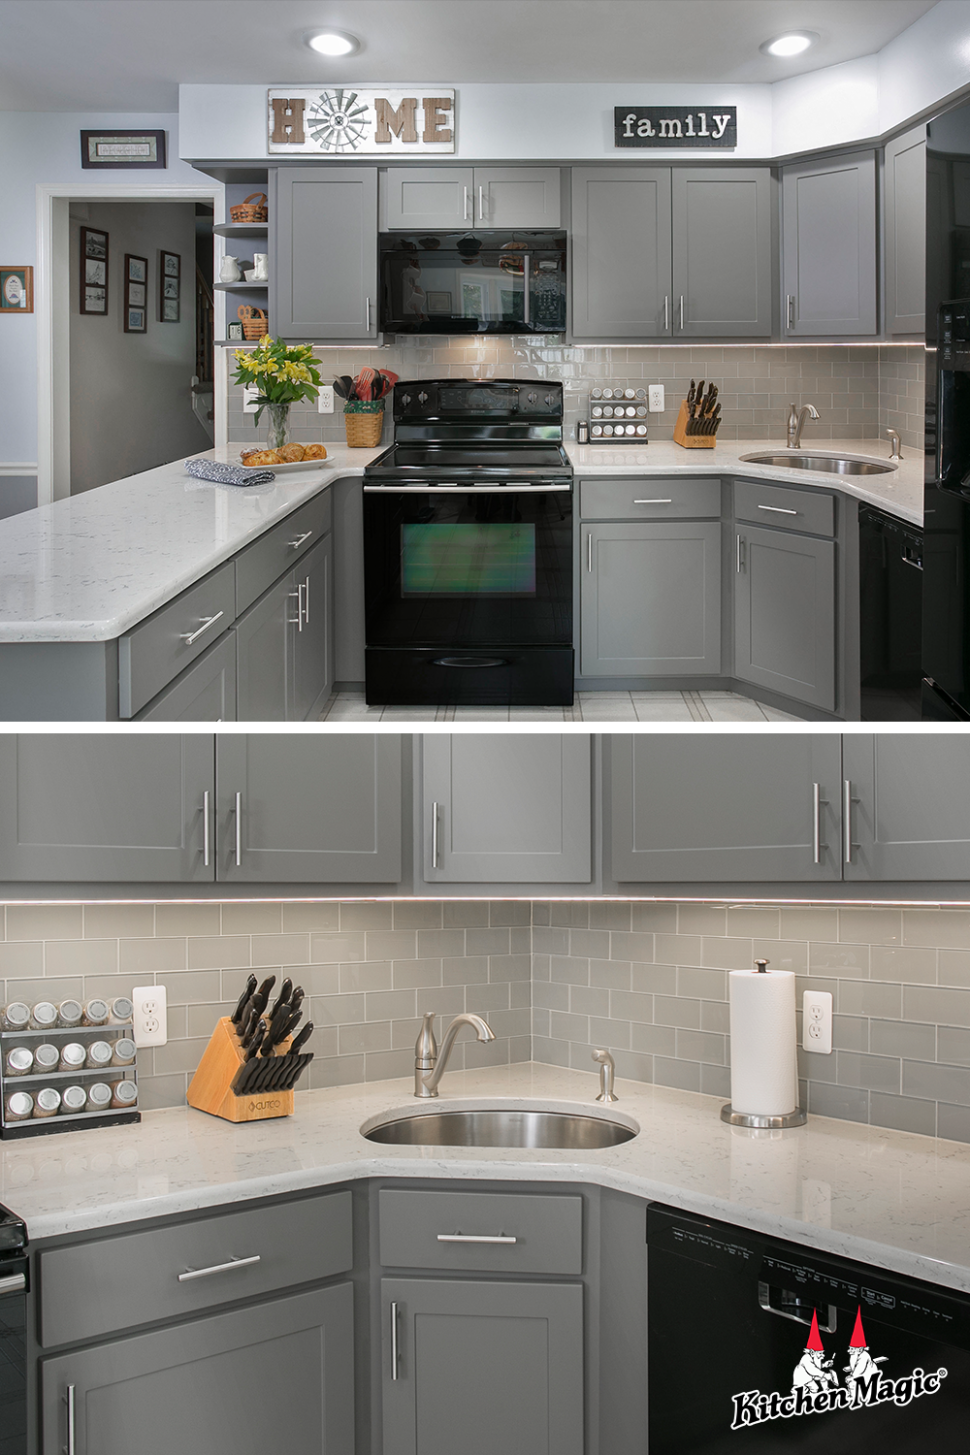 5 Gray Kitchens ideas in 5  kitchen design, kitchen, kitchen  - grey kitchen decor ideas